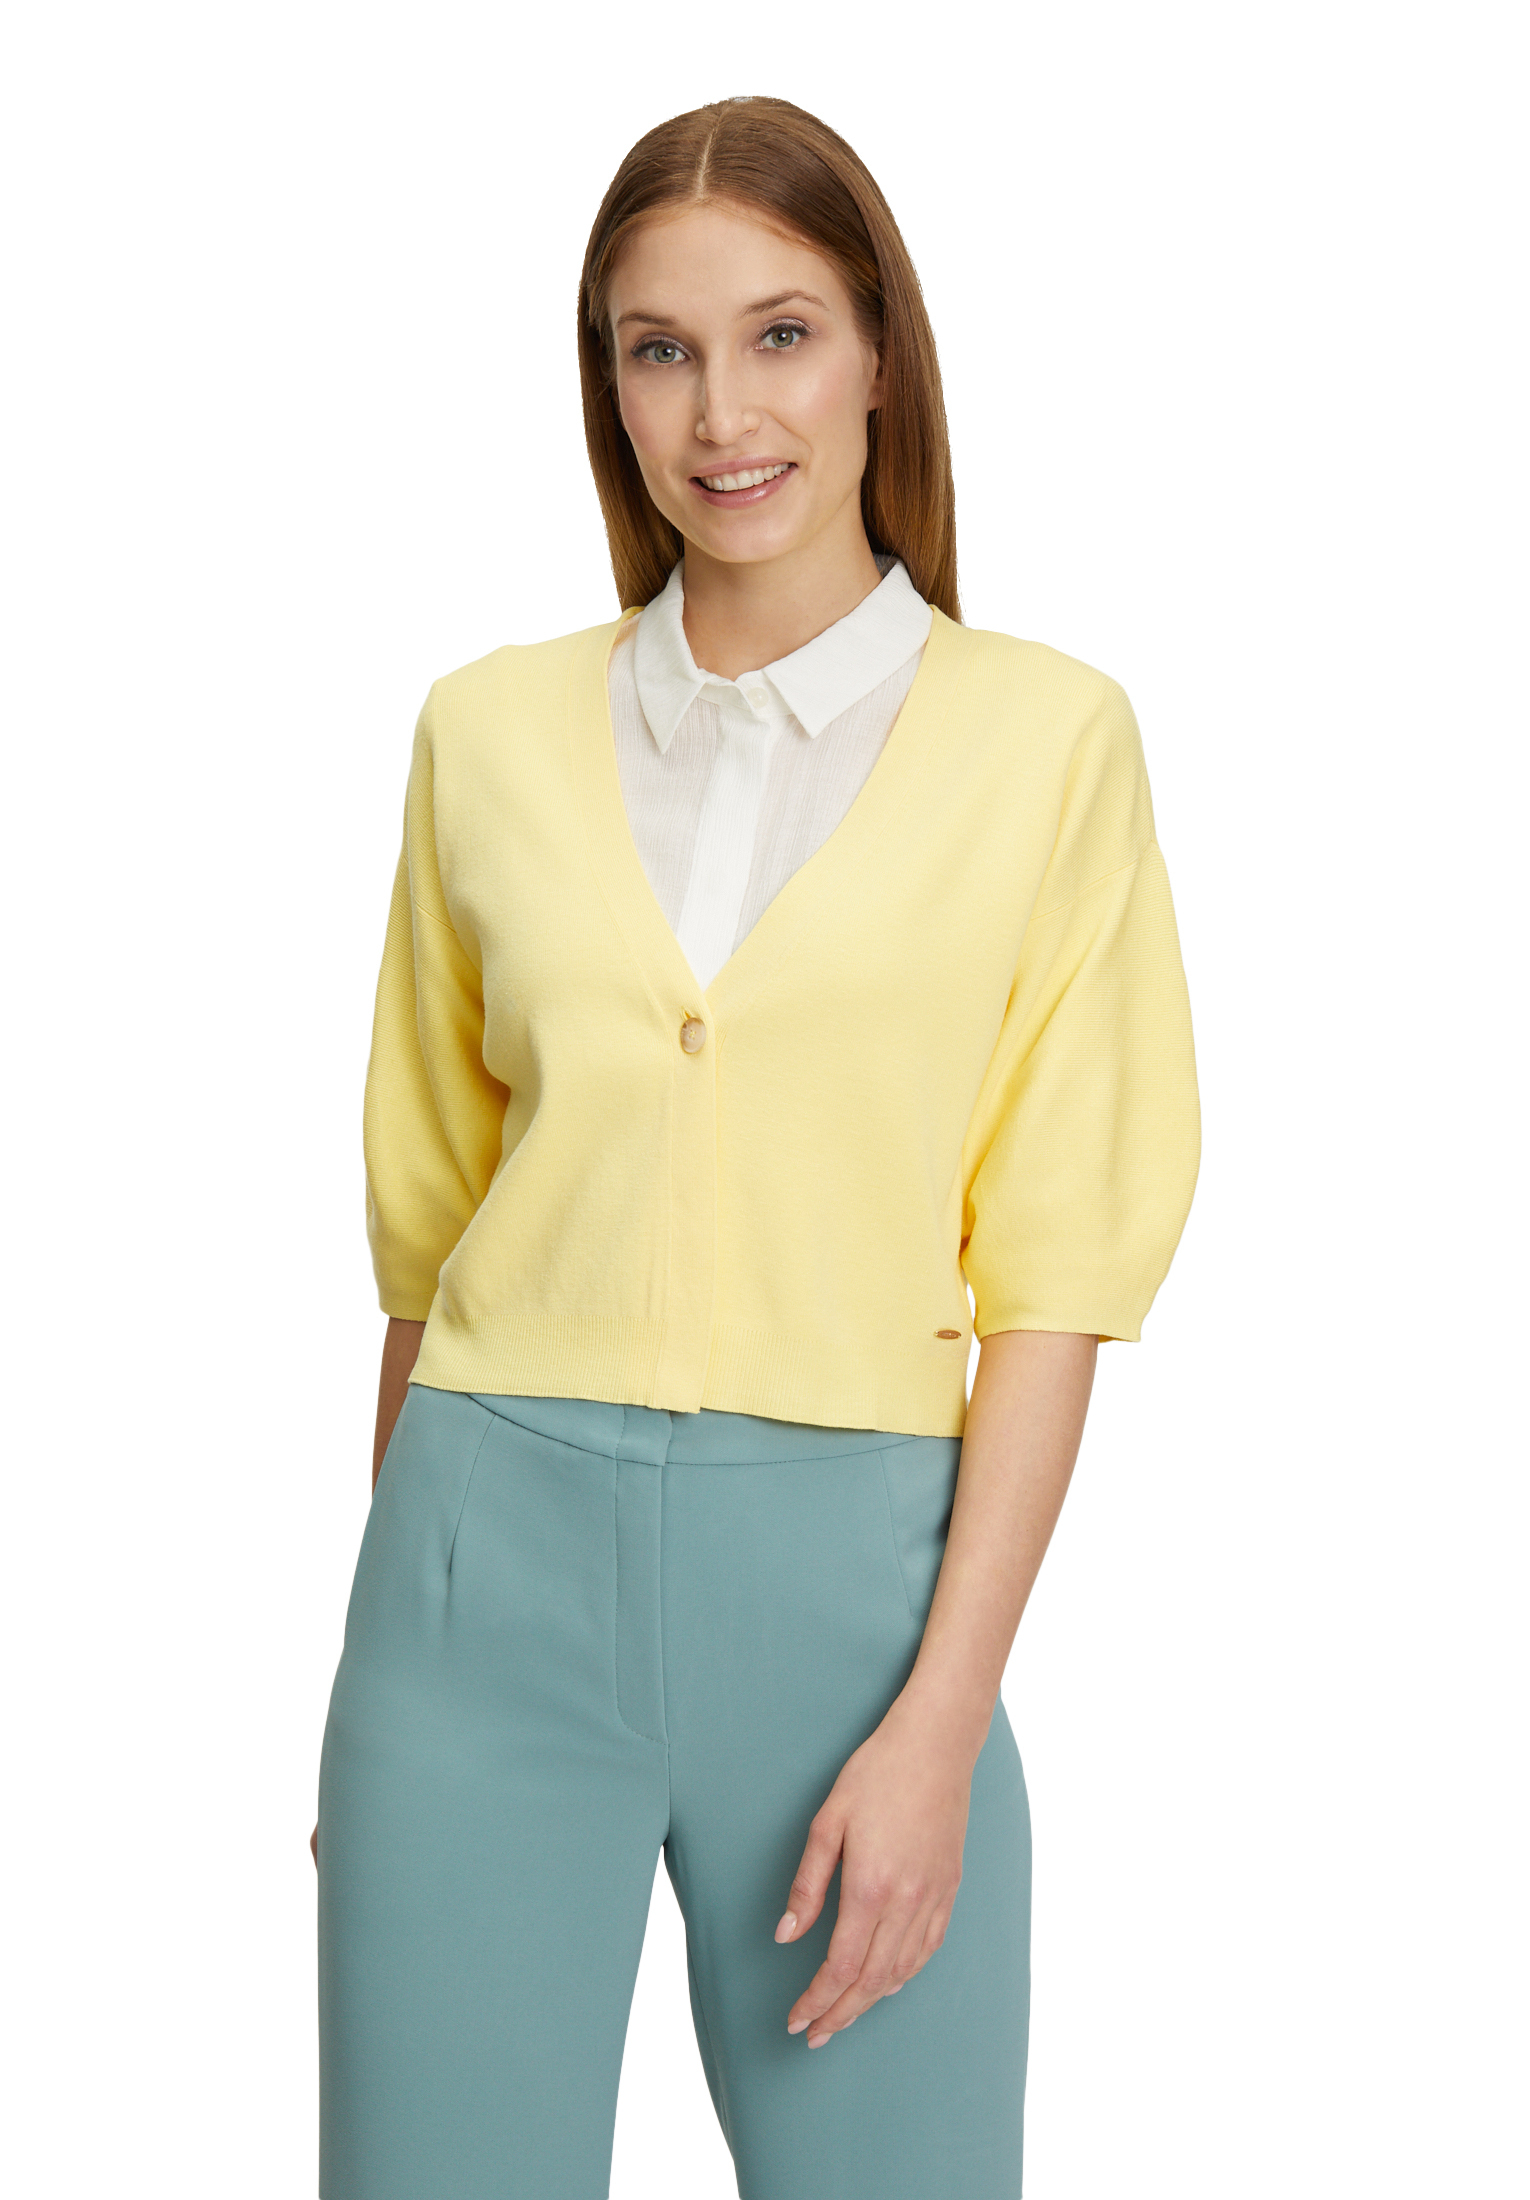 Sweter Żółty Zapinany na Guzik Betty & Co 5571-3790-2013